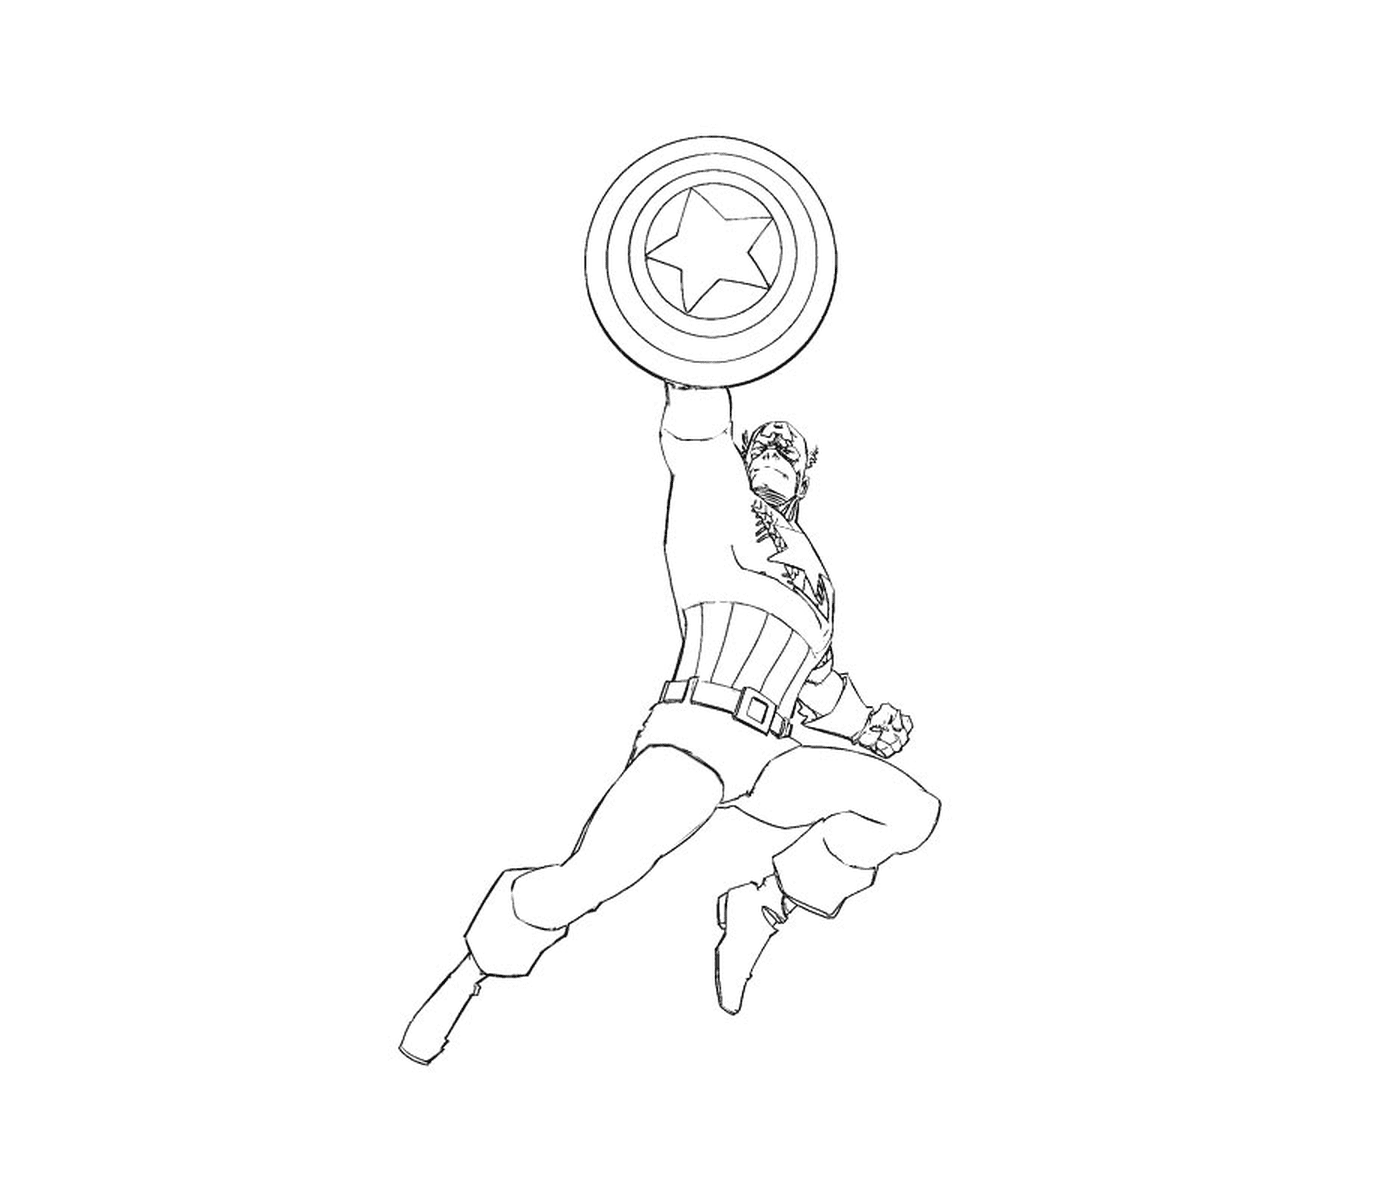  un hombre saltando en el aire (imagen no relacionada con el Capitán América) 